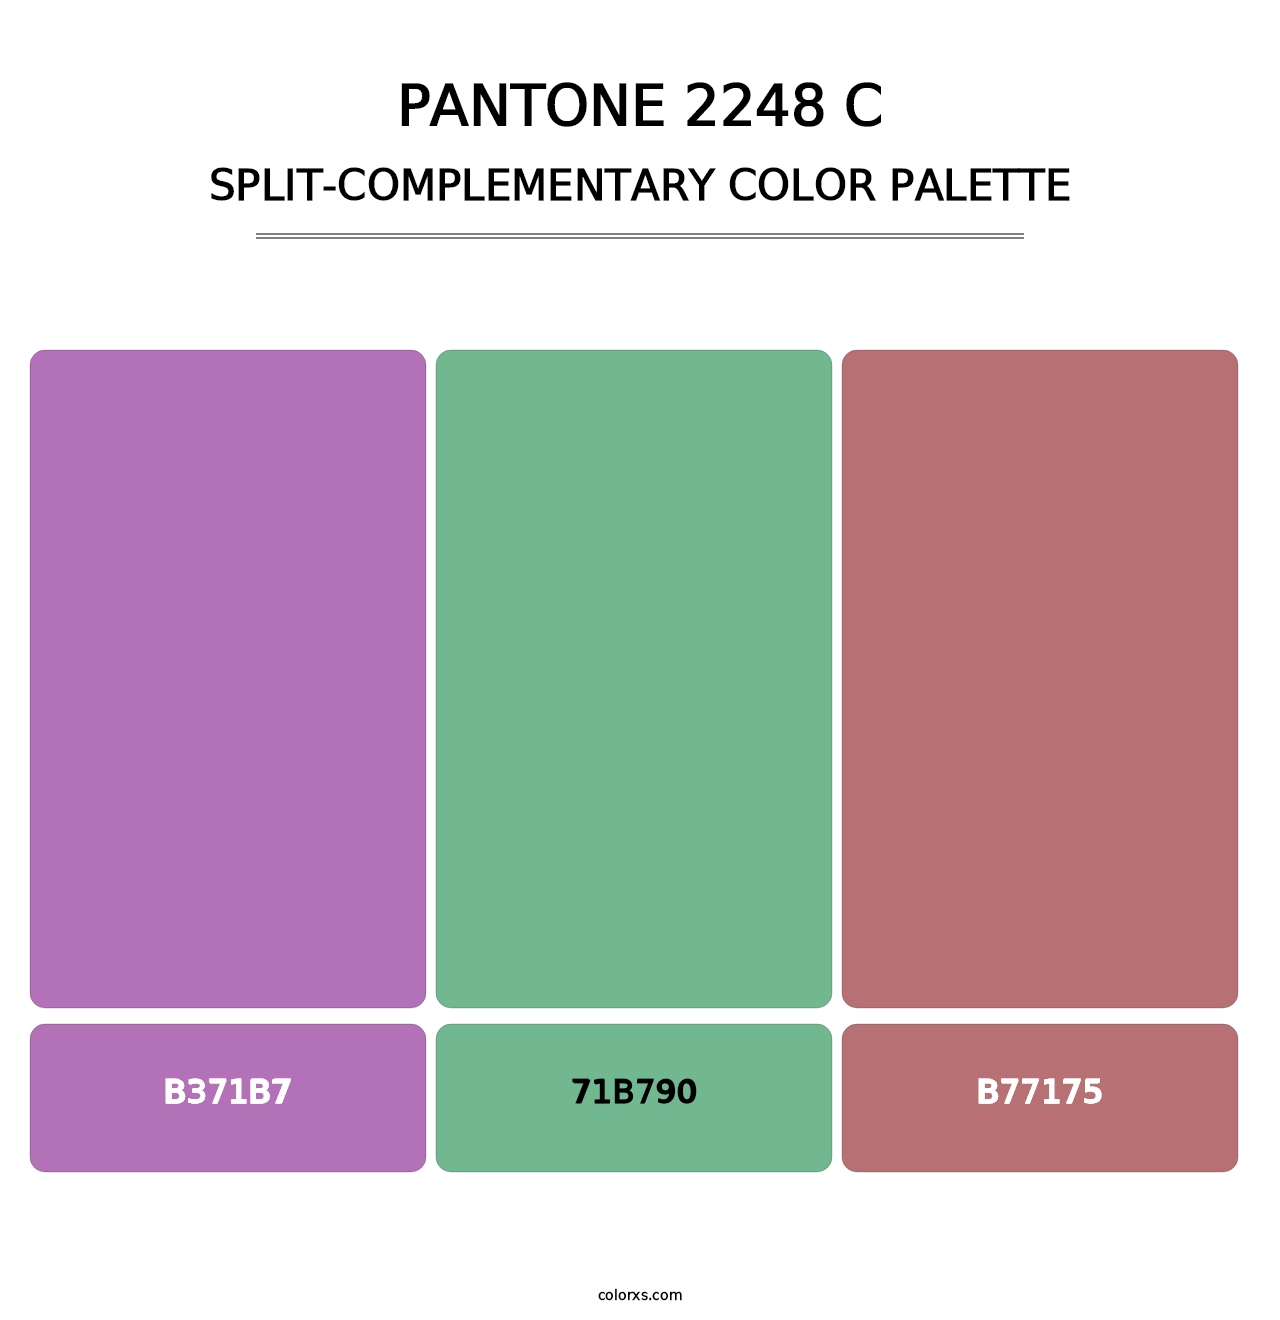 PANTONE 2248 C - Split-Complementary Color Palette